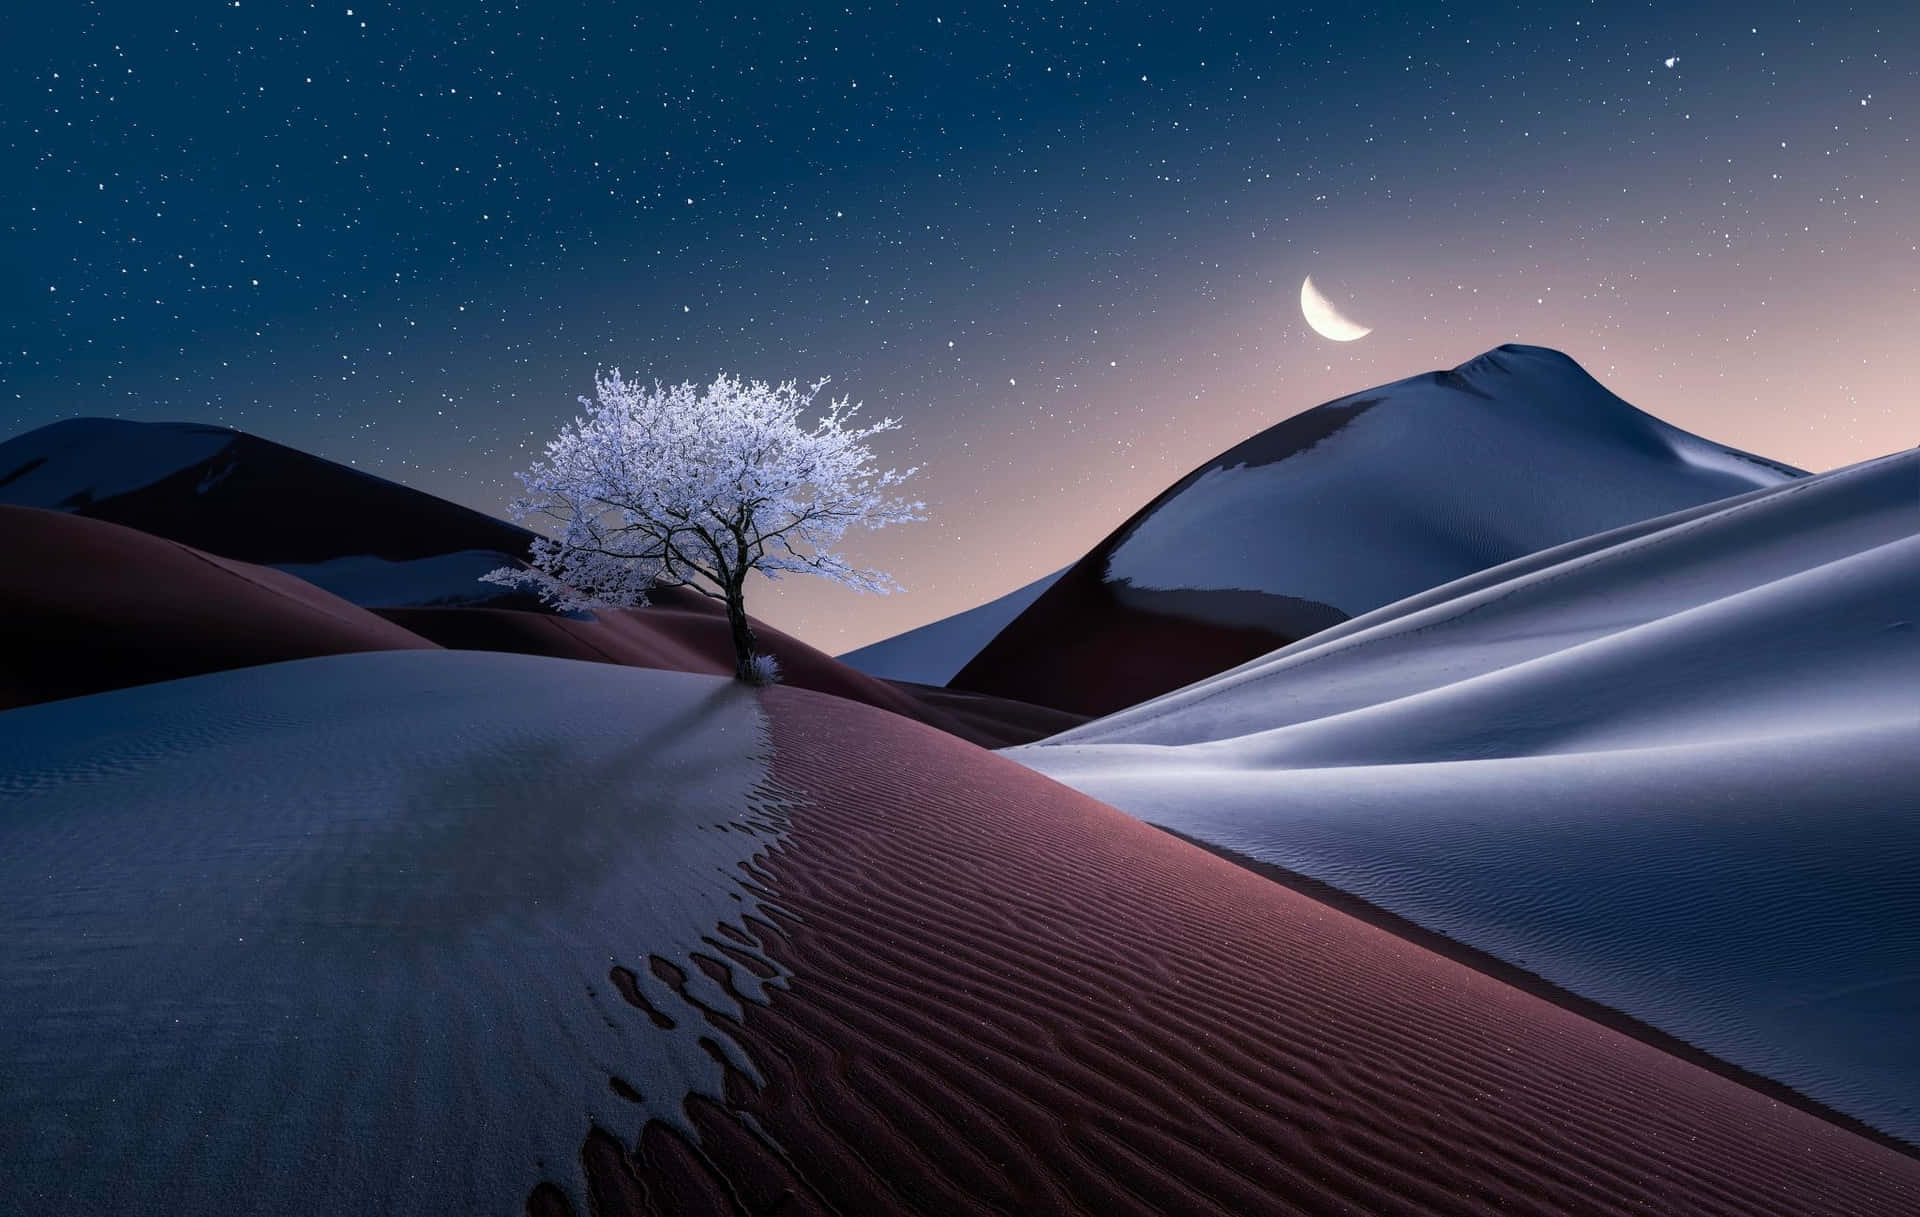 Download wallpaper: Sunset on the desert dunes 1920x1080